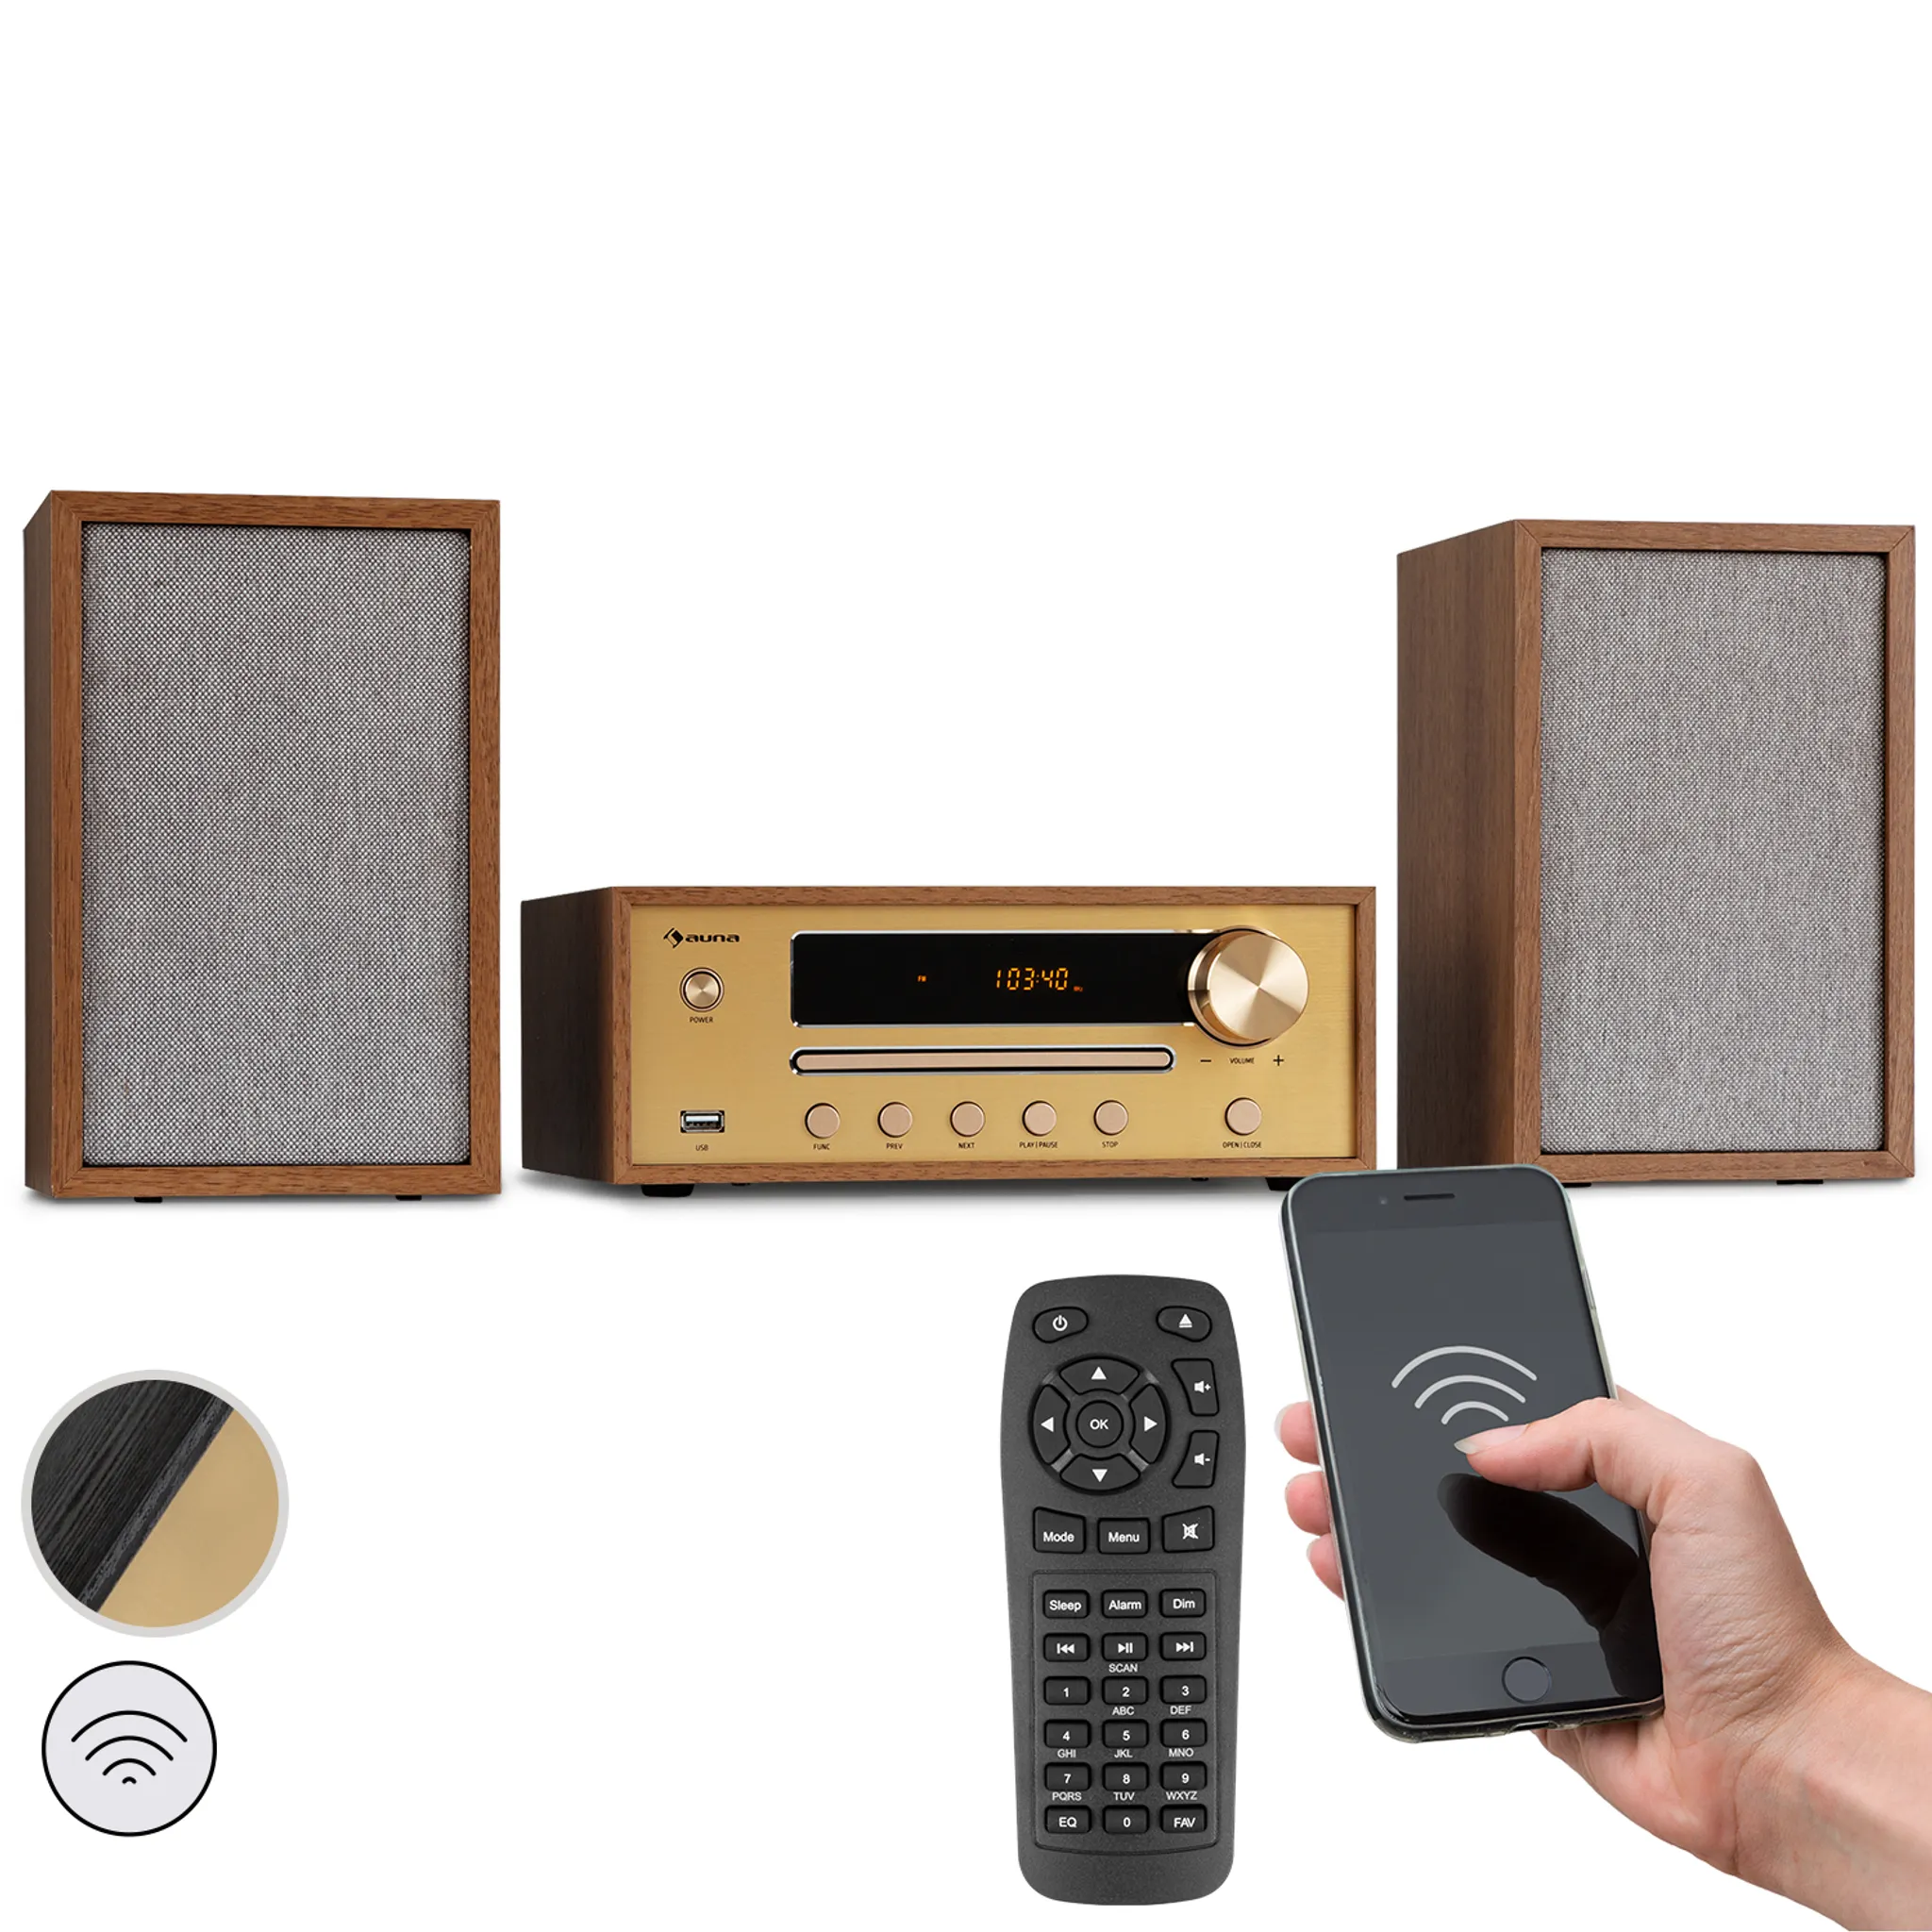 UNIVERSUM Stereoanlage mit CD, DAB+, UKW Radio, Bluetooth, AUX In und USB  MS 300-21 black